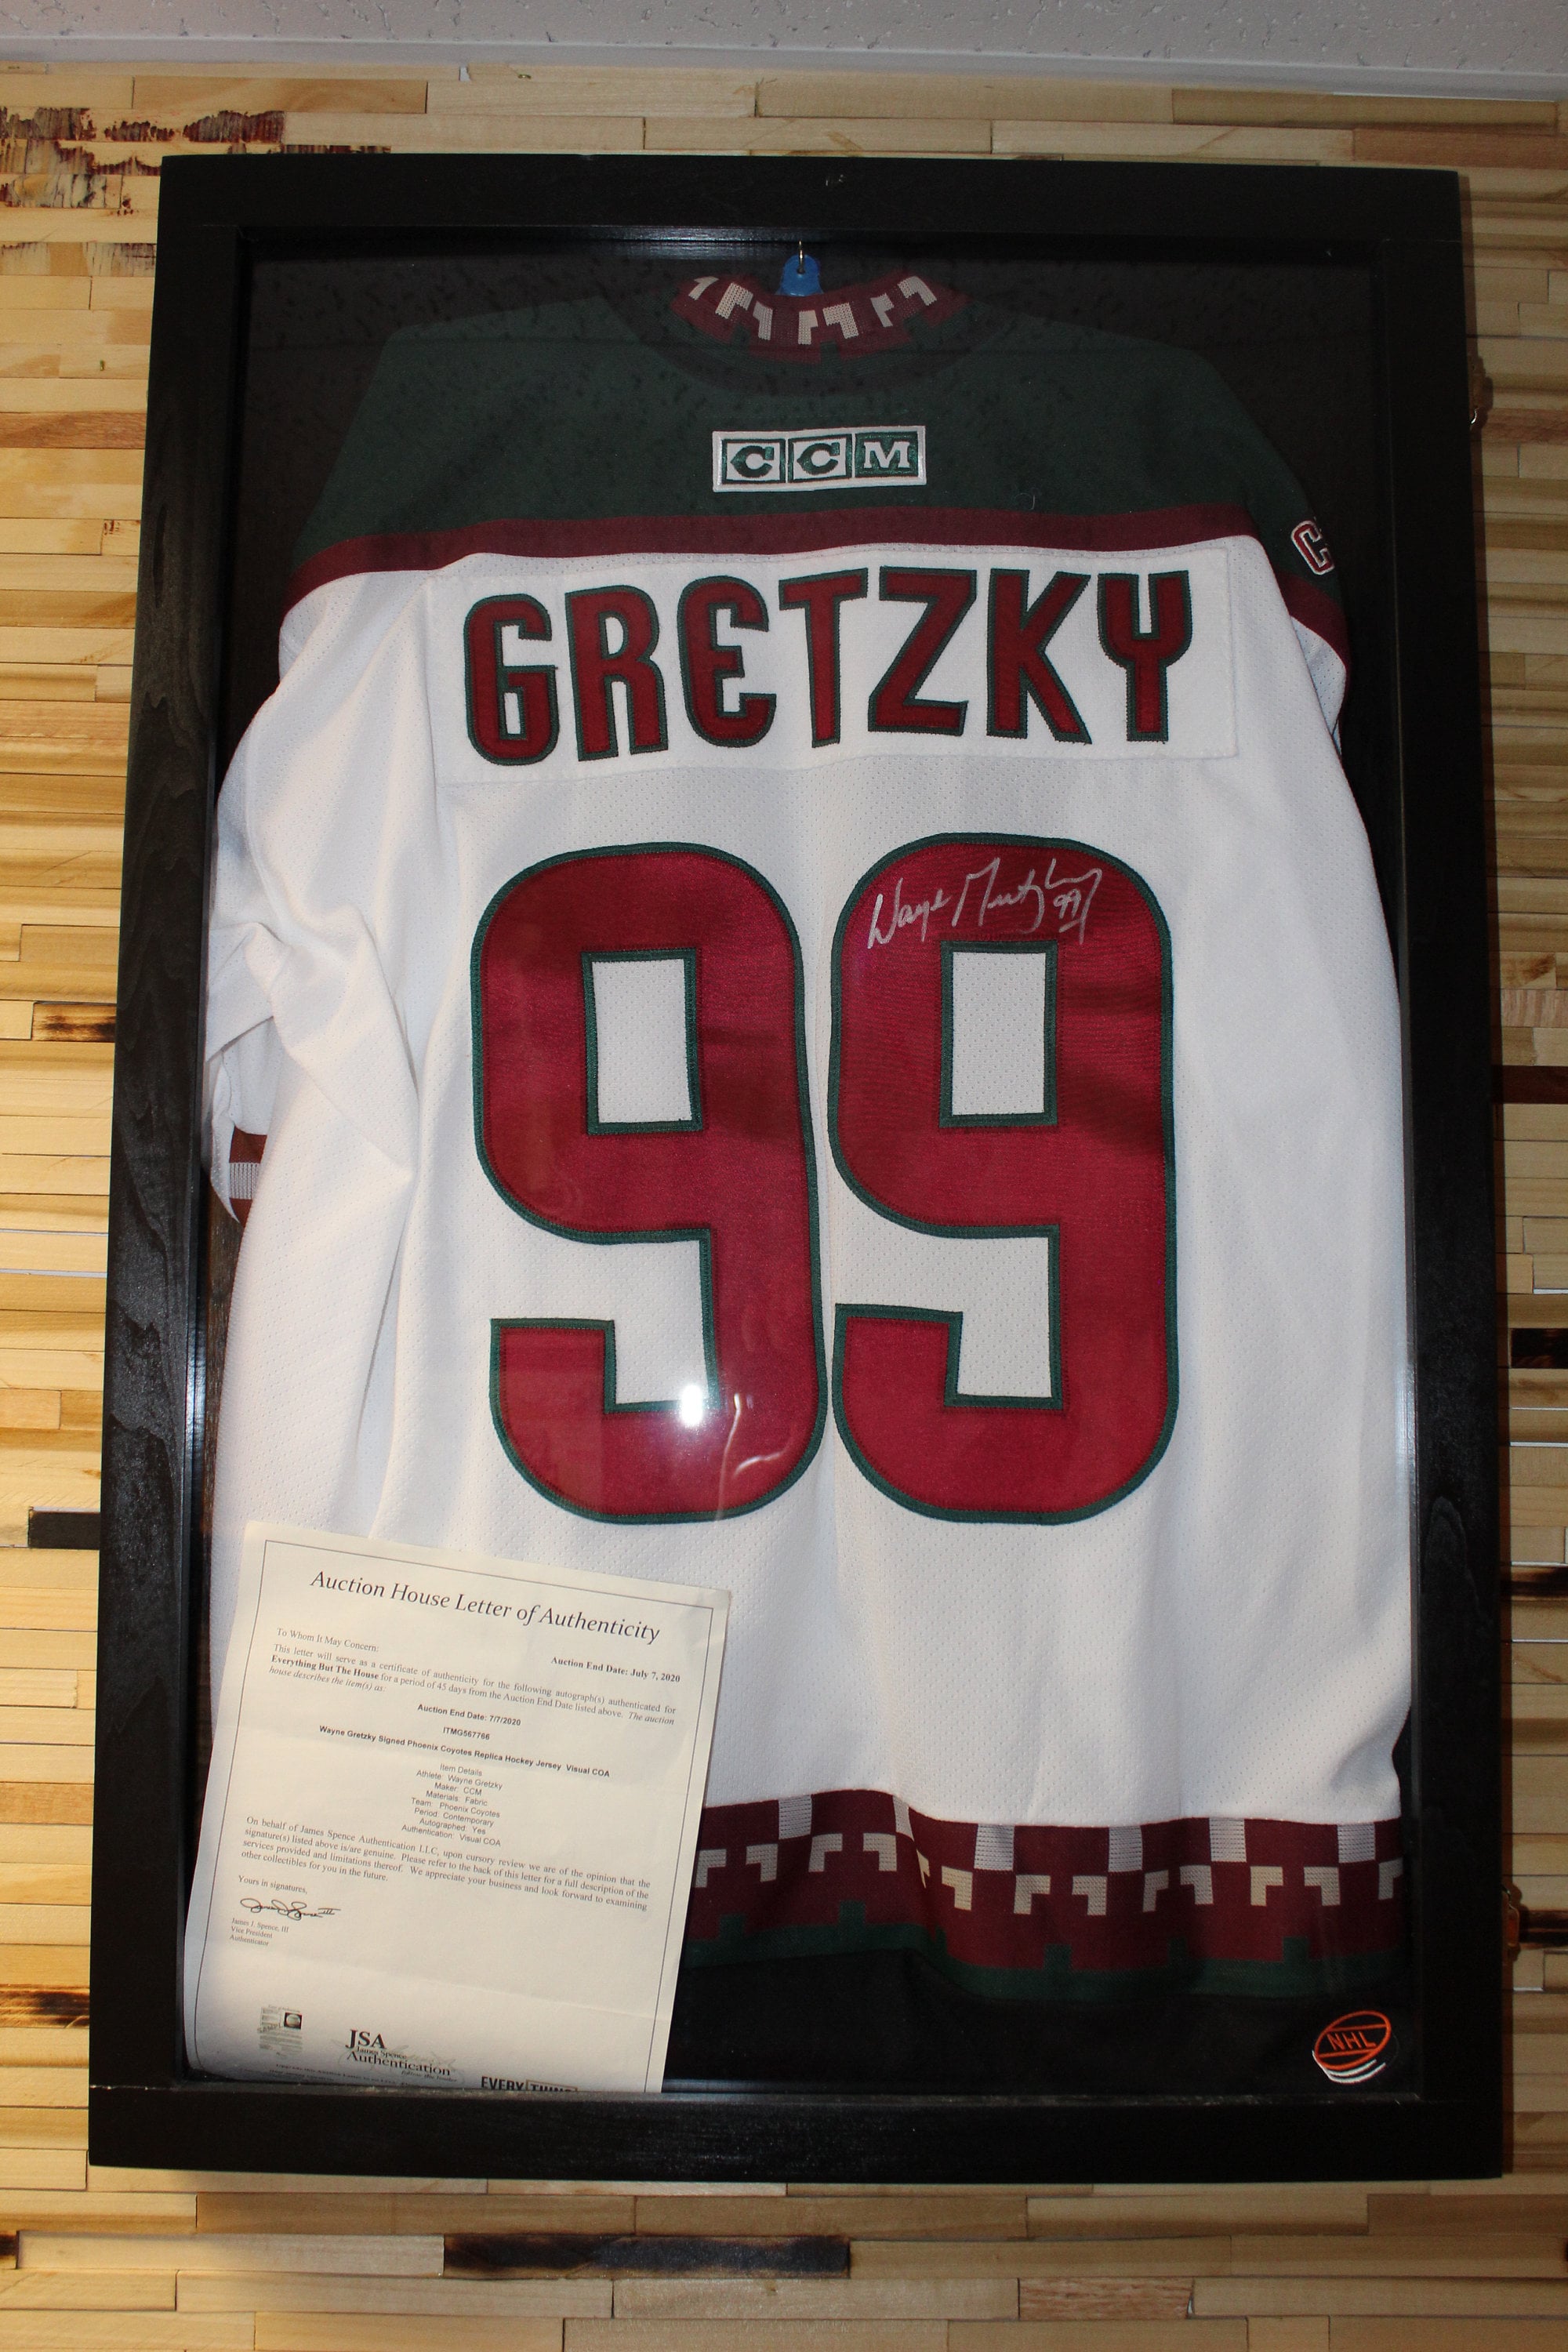 Wayne Gretzky 34x42 Custom Framed Jersey Display